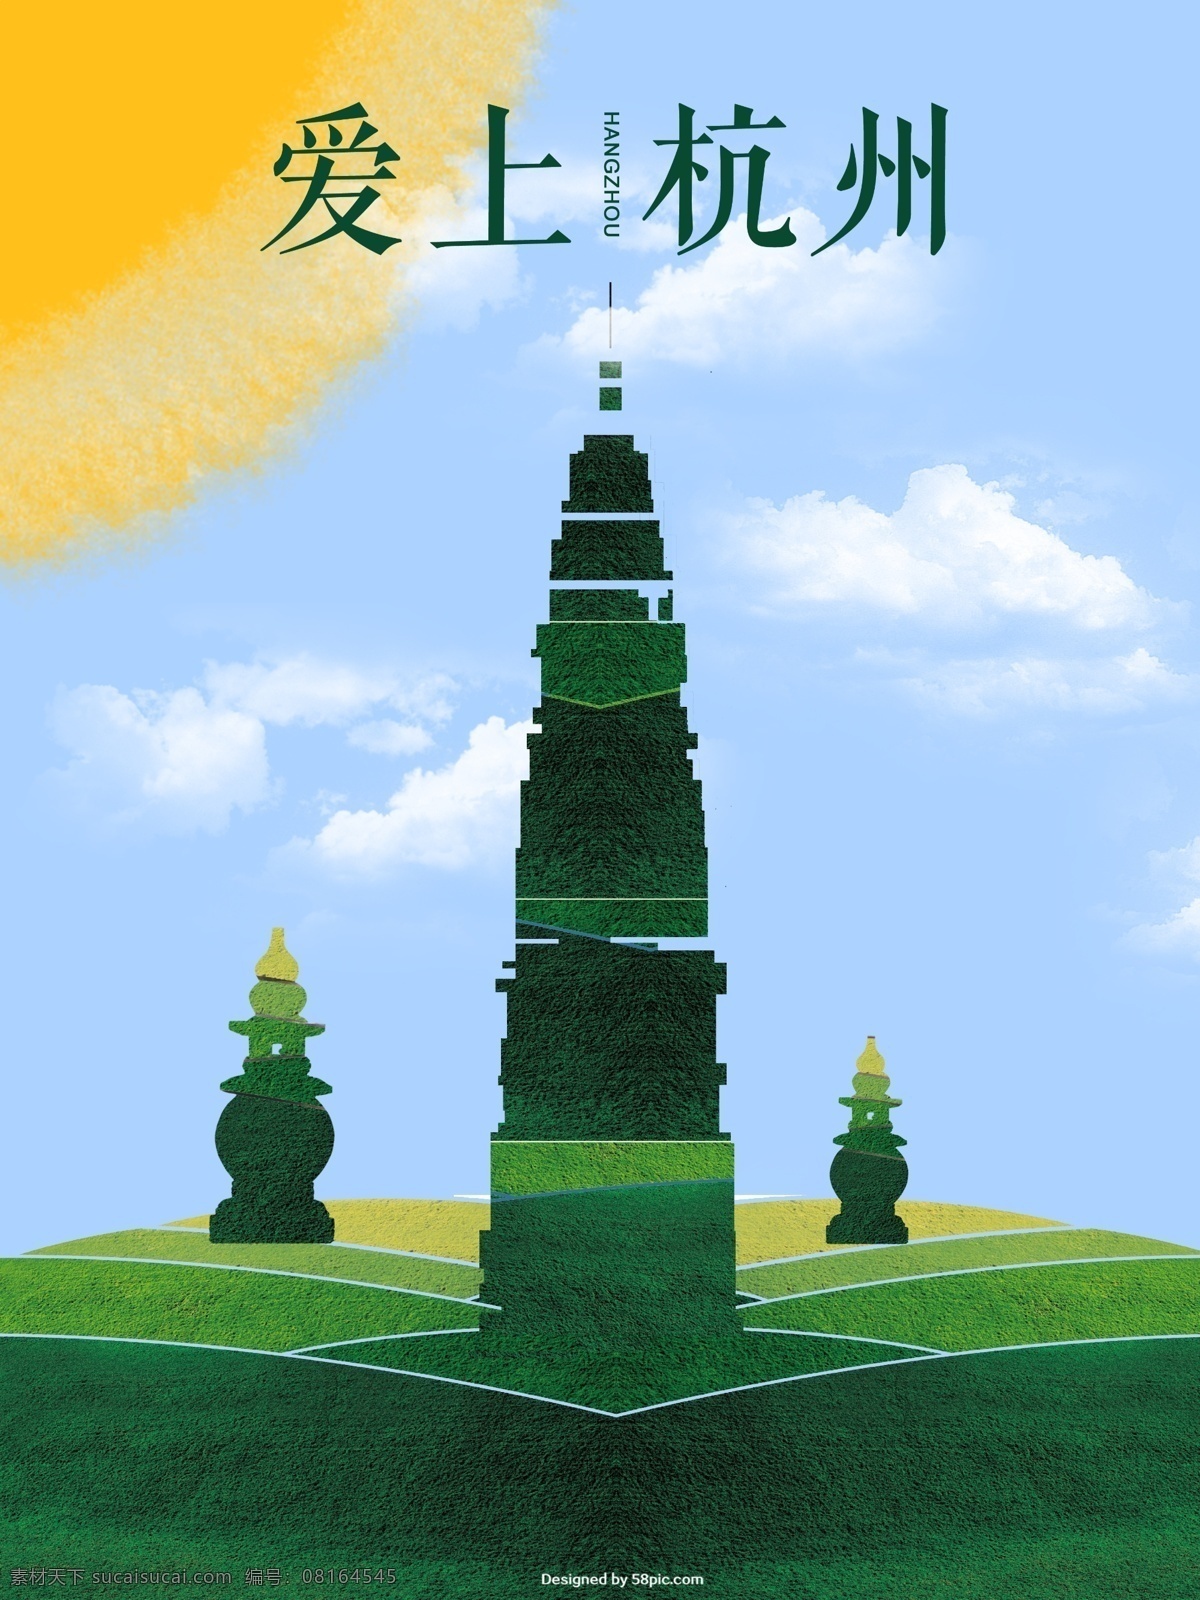 爱上 杭州旅游 海报 杭州 旅游 杭州旅行 绿色 春天 踏青 创意 雷峰塔 旅行社 宣传海报